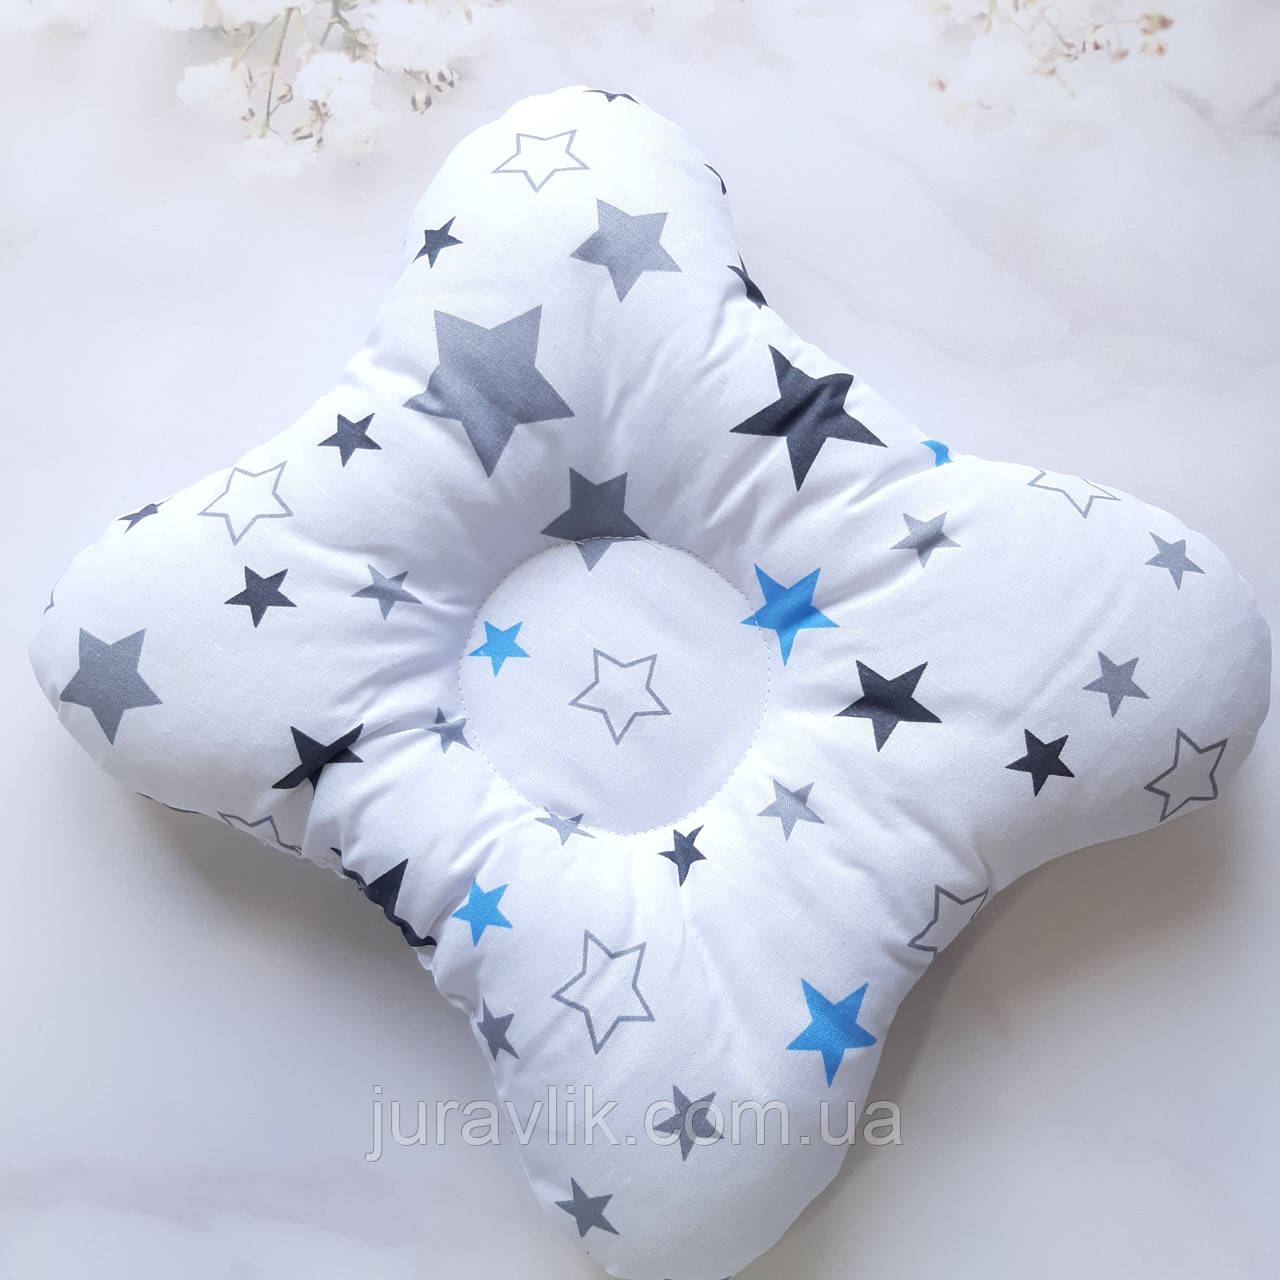 Дитяча ортопедична подушка Метелик  Подушка для новонароджених ортопедична